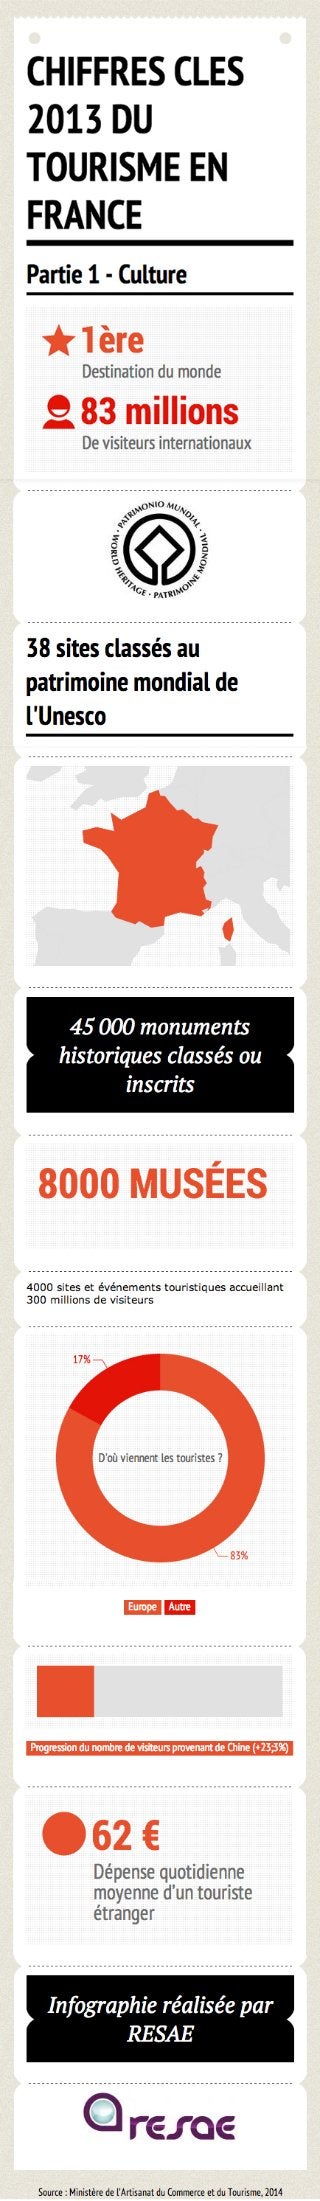 [Infographie] Chiffres clés du tourisme français en 2013 - Partie 1 : Culture